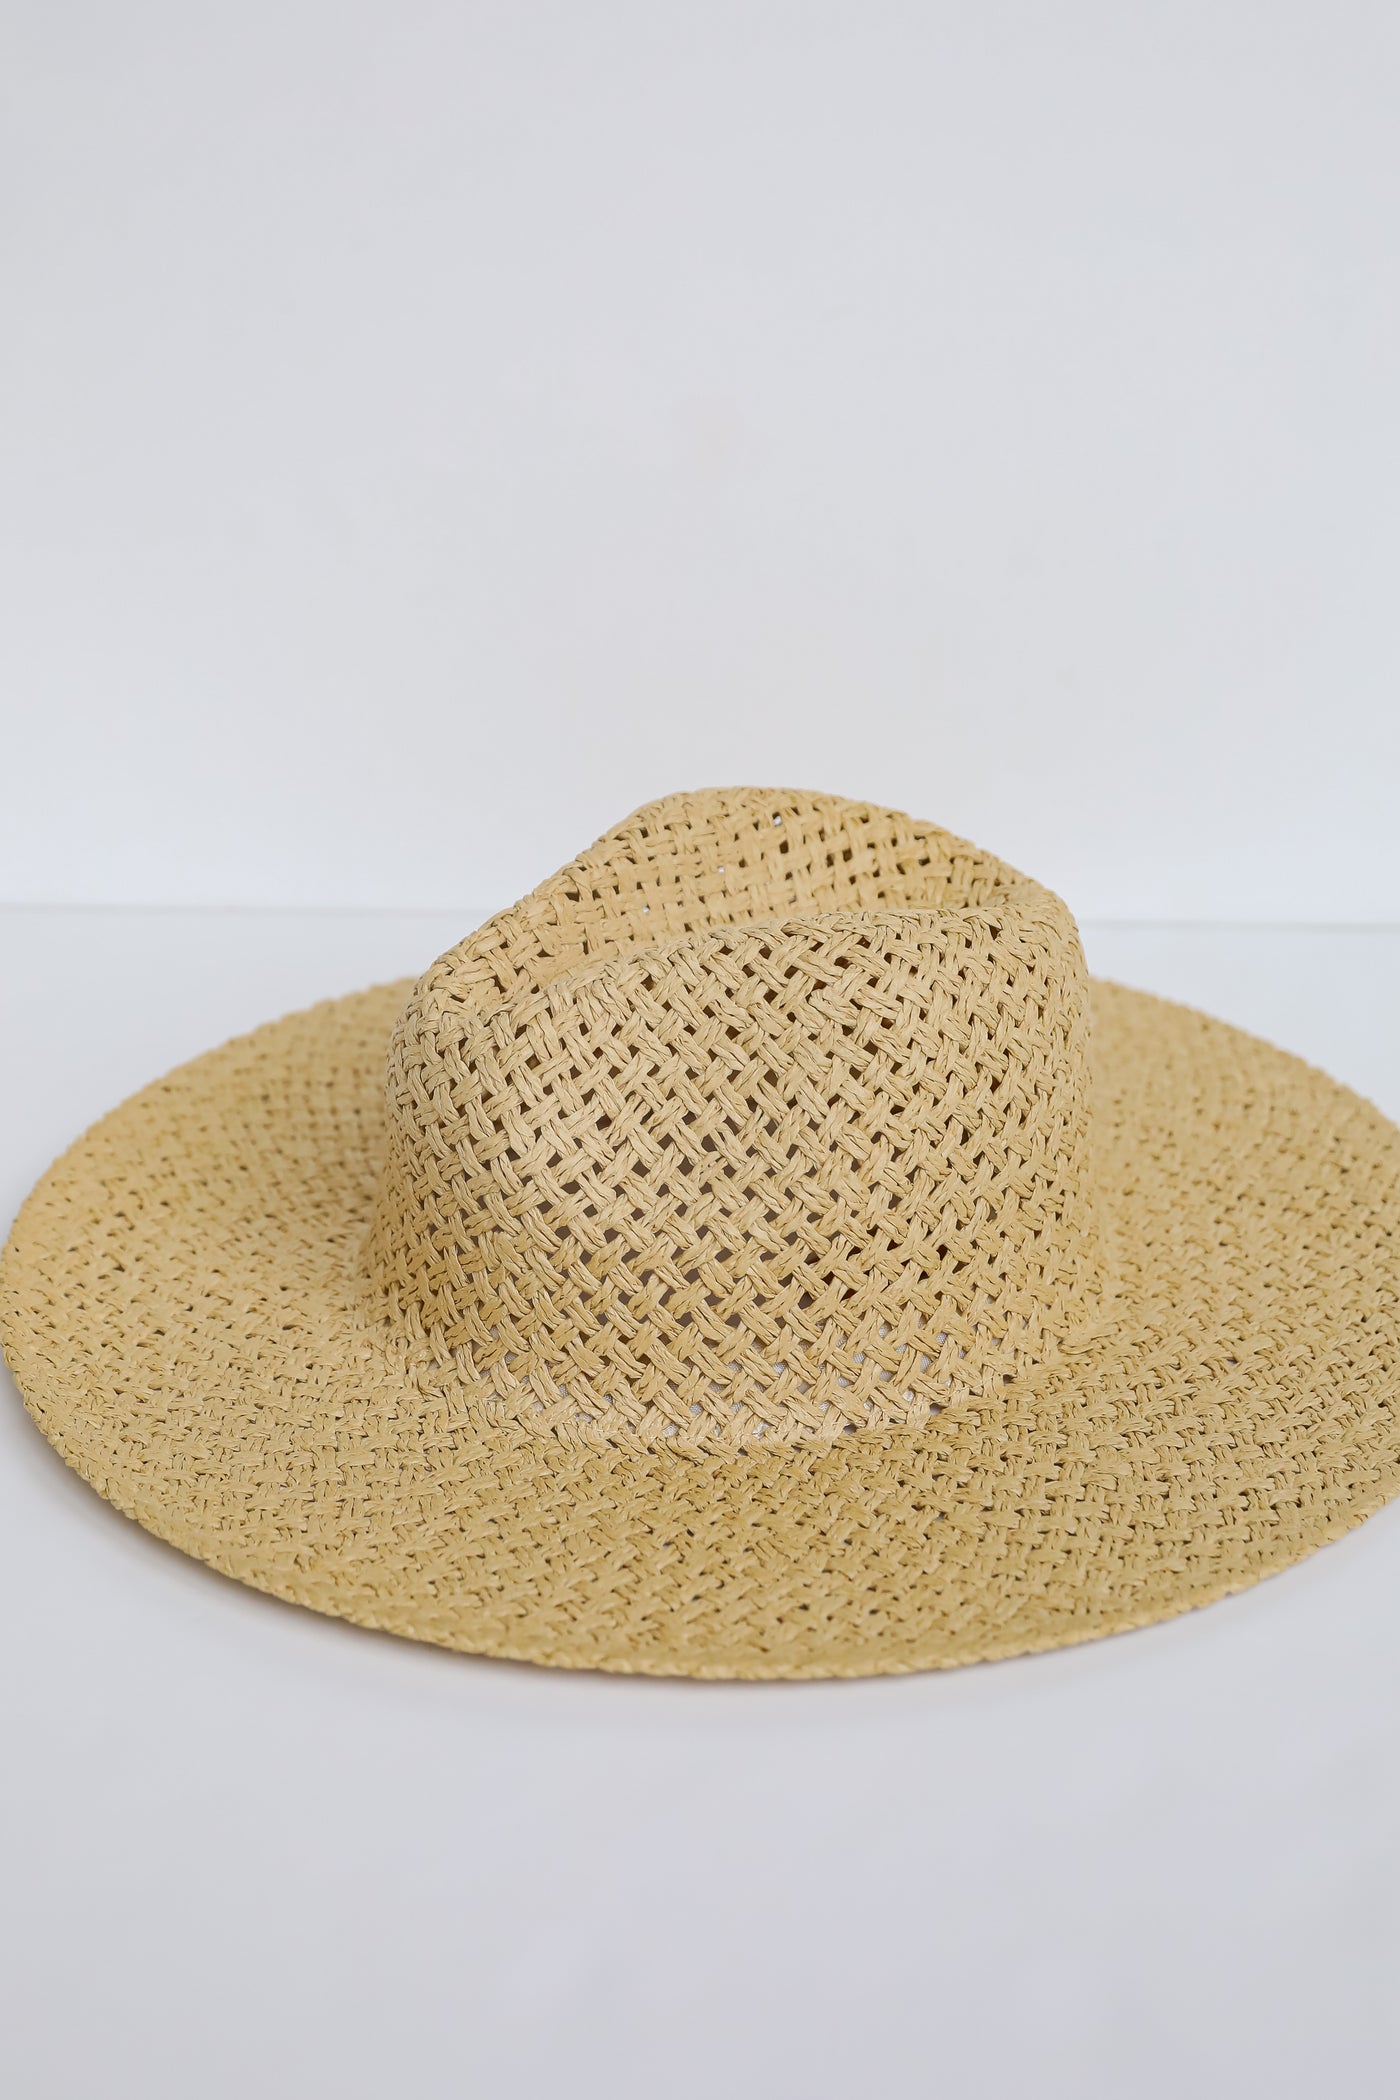 cute Natural Straw Fedora Wide Brim Hat